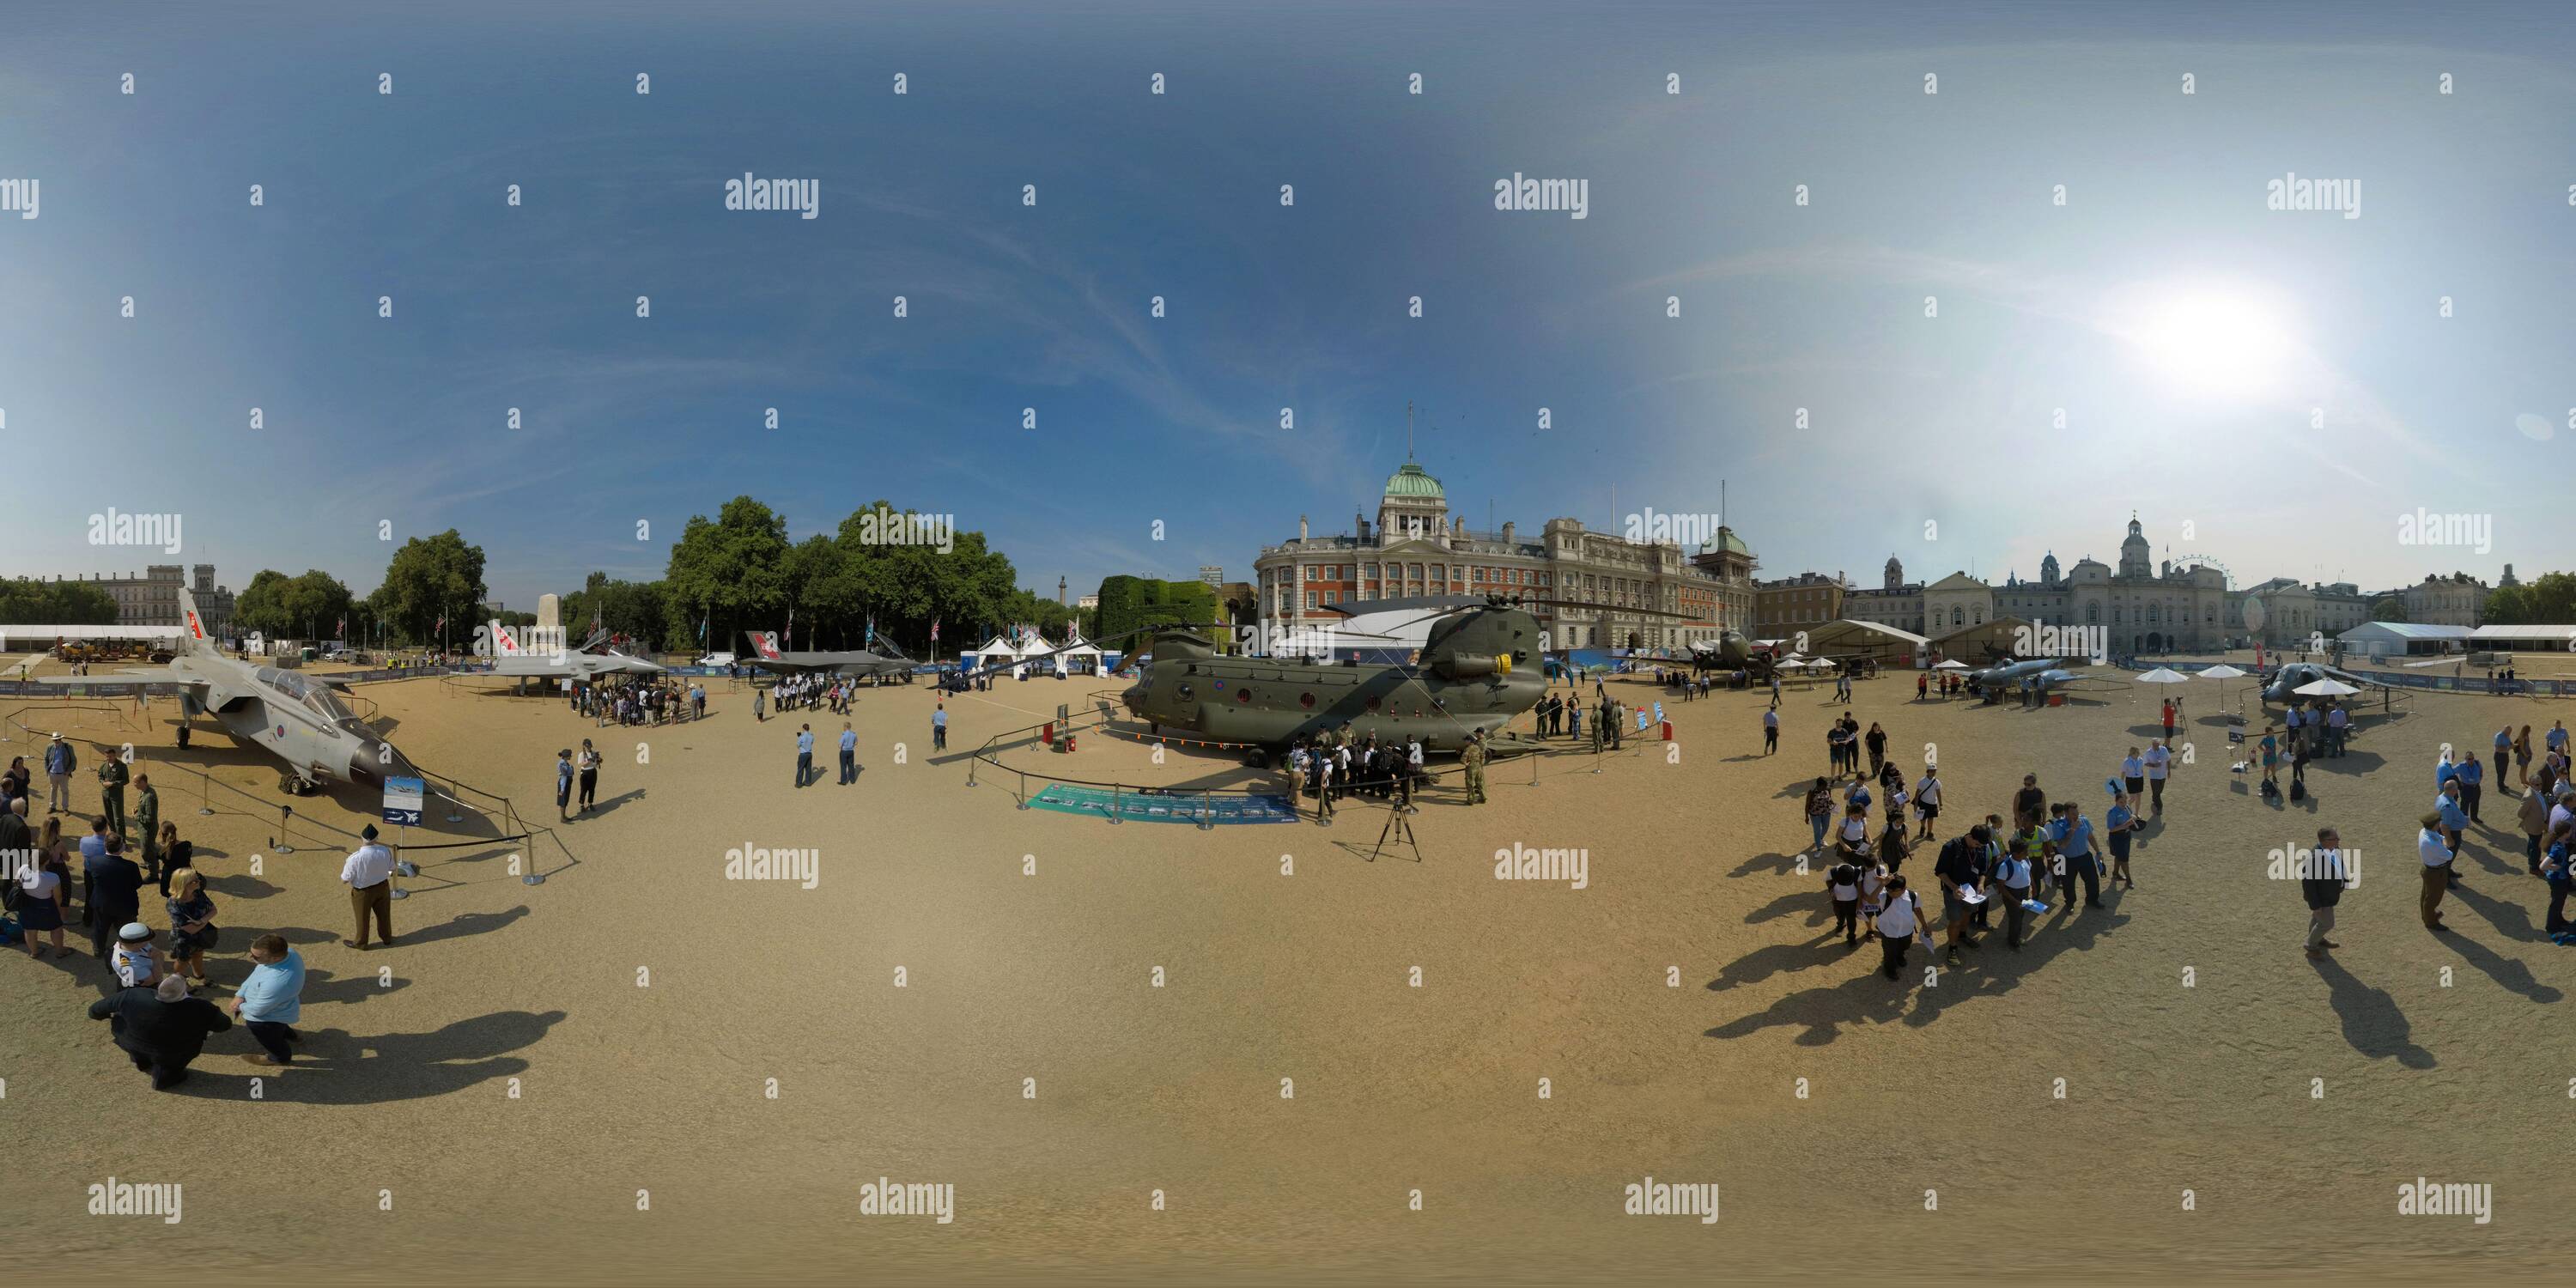 360 Grad Panorama Ansicht von Eine Sammlung von RAF-Flugzeugen im Laufe der Zeit bei der Horse Guards Parade in London, um den 100. Jahrestag der RAF zu feiern. BILD : MARK PAIN / ALAMY